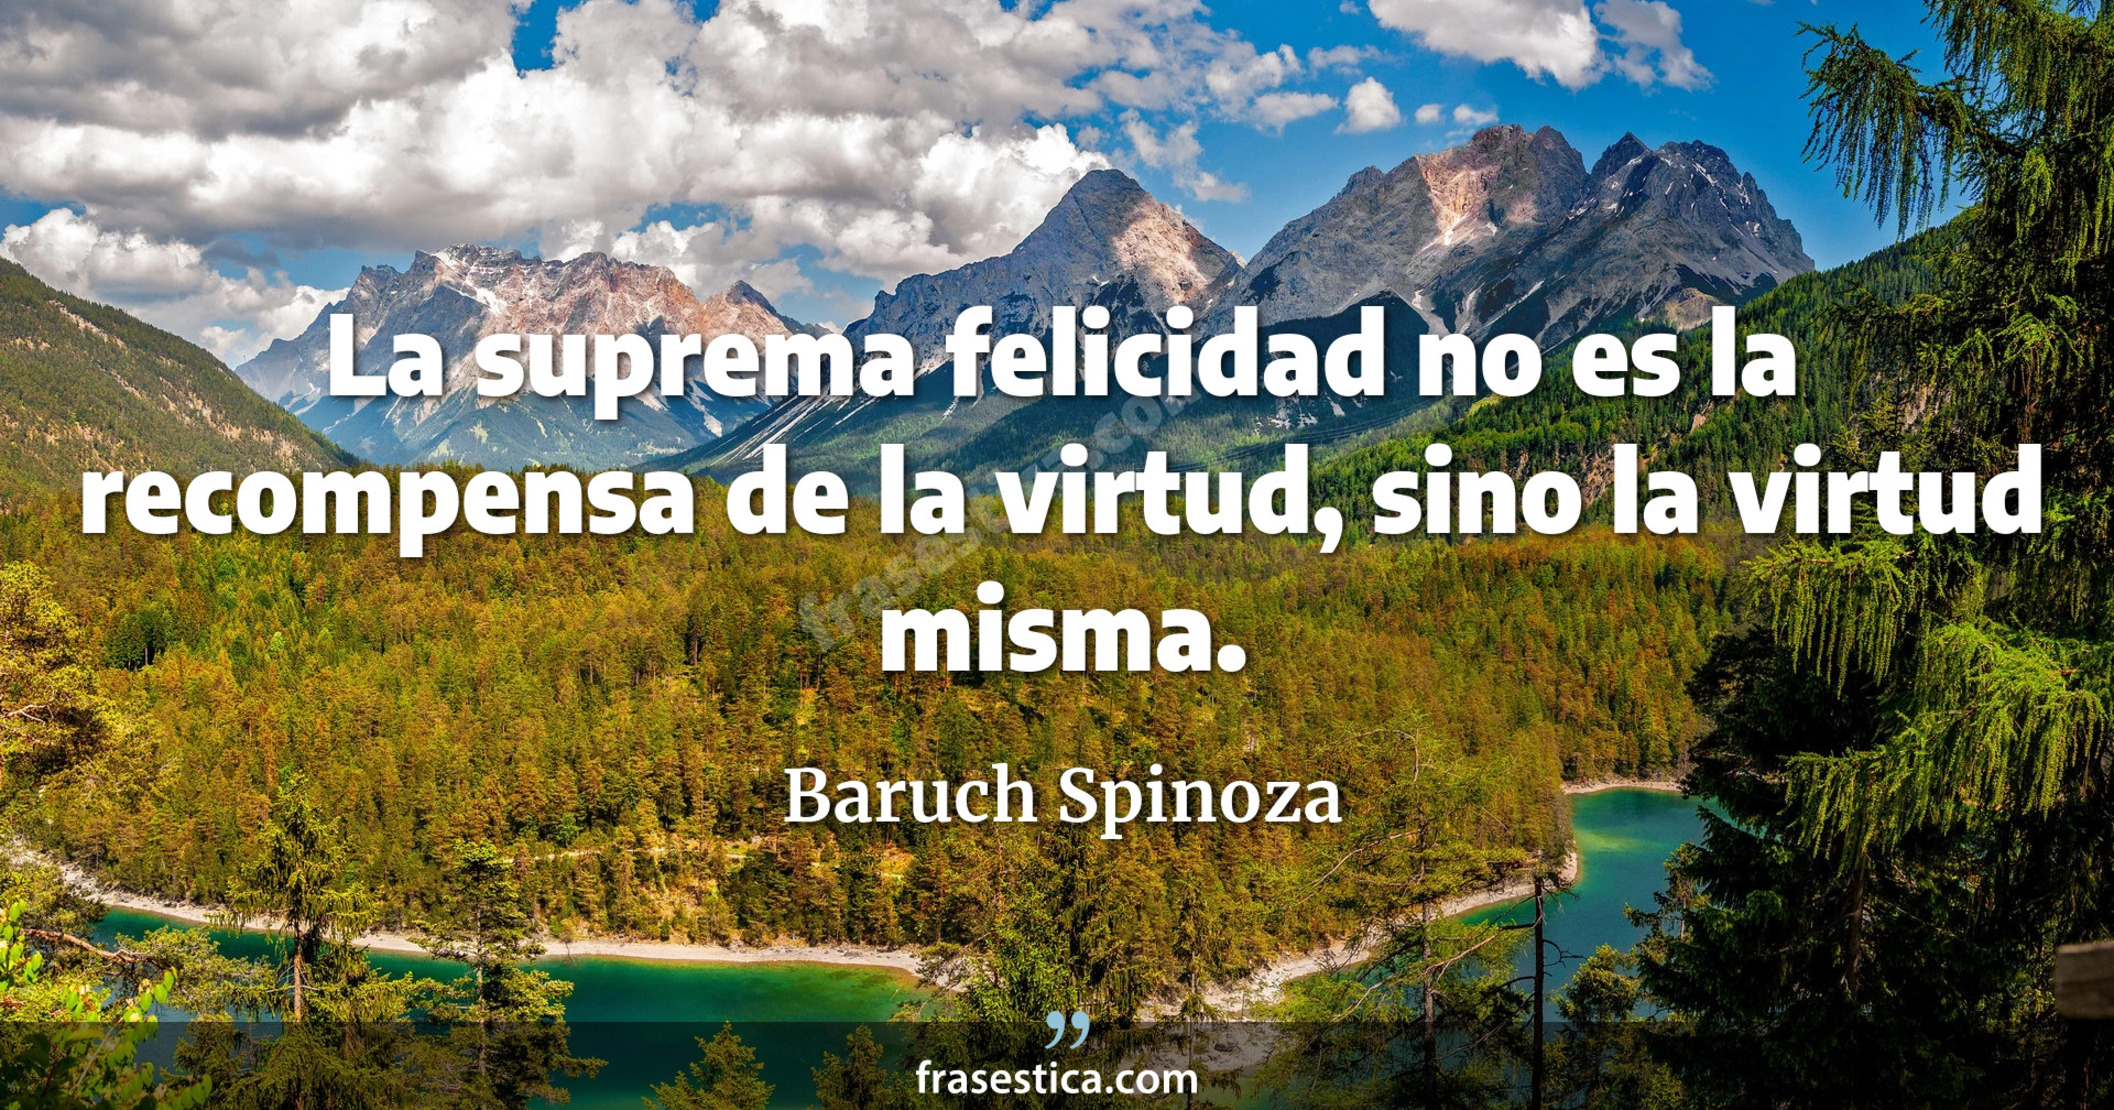 La suprema felicidad no es la recompensa de la virtud, sino la virtud misma. - Baruch Spinoza